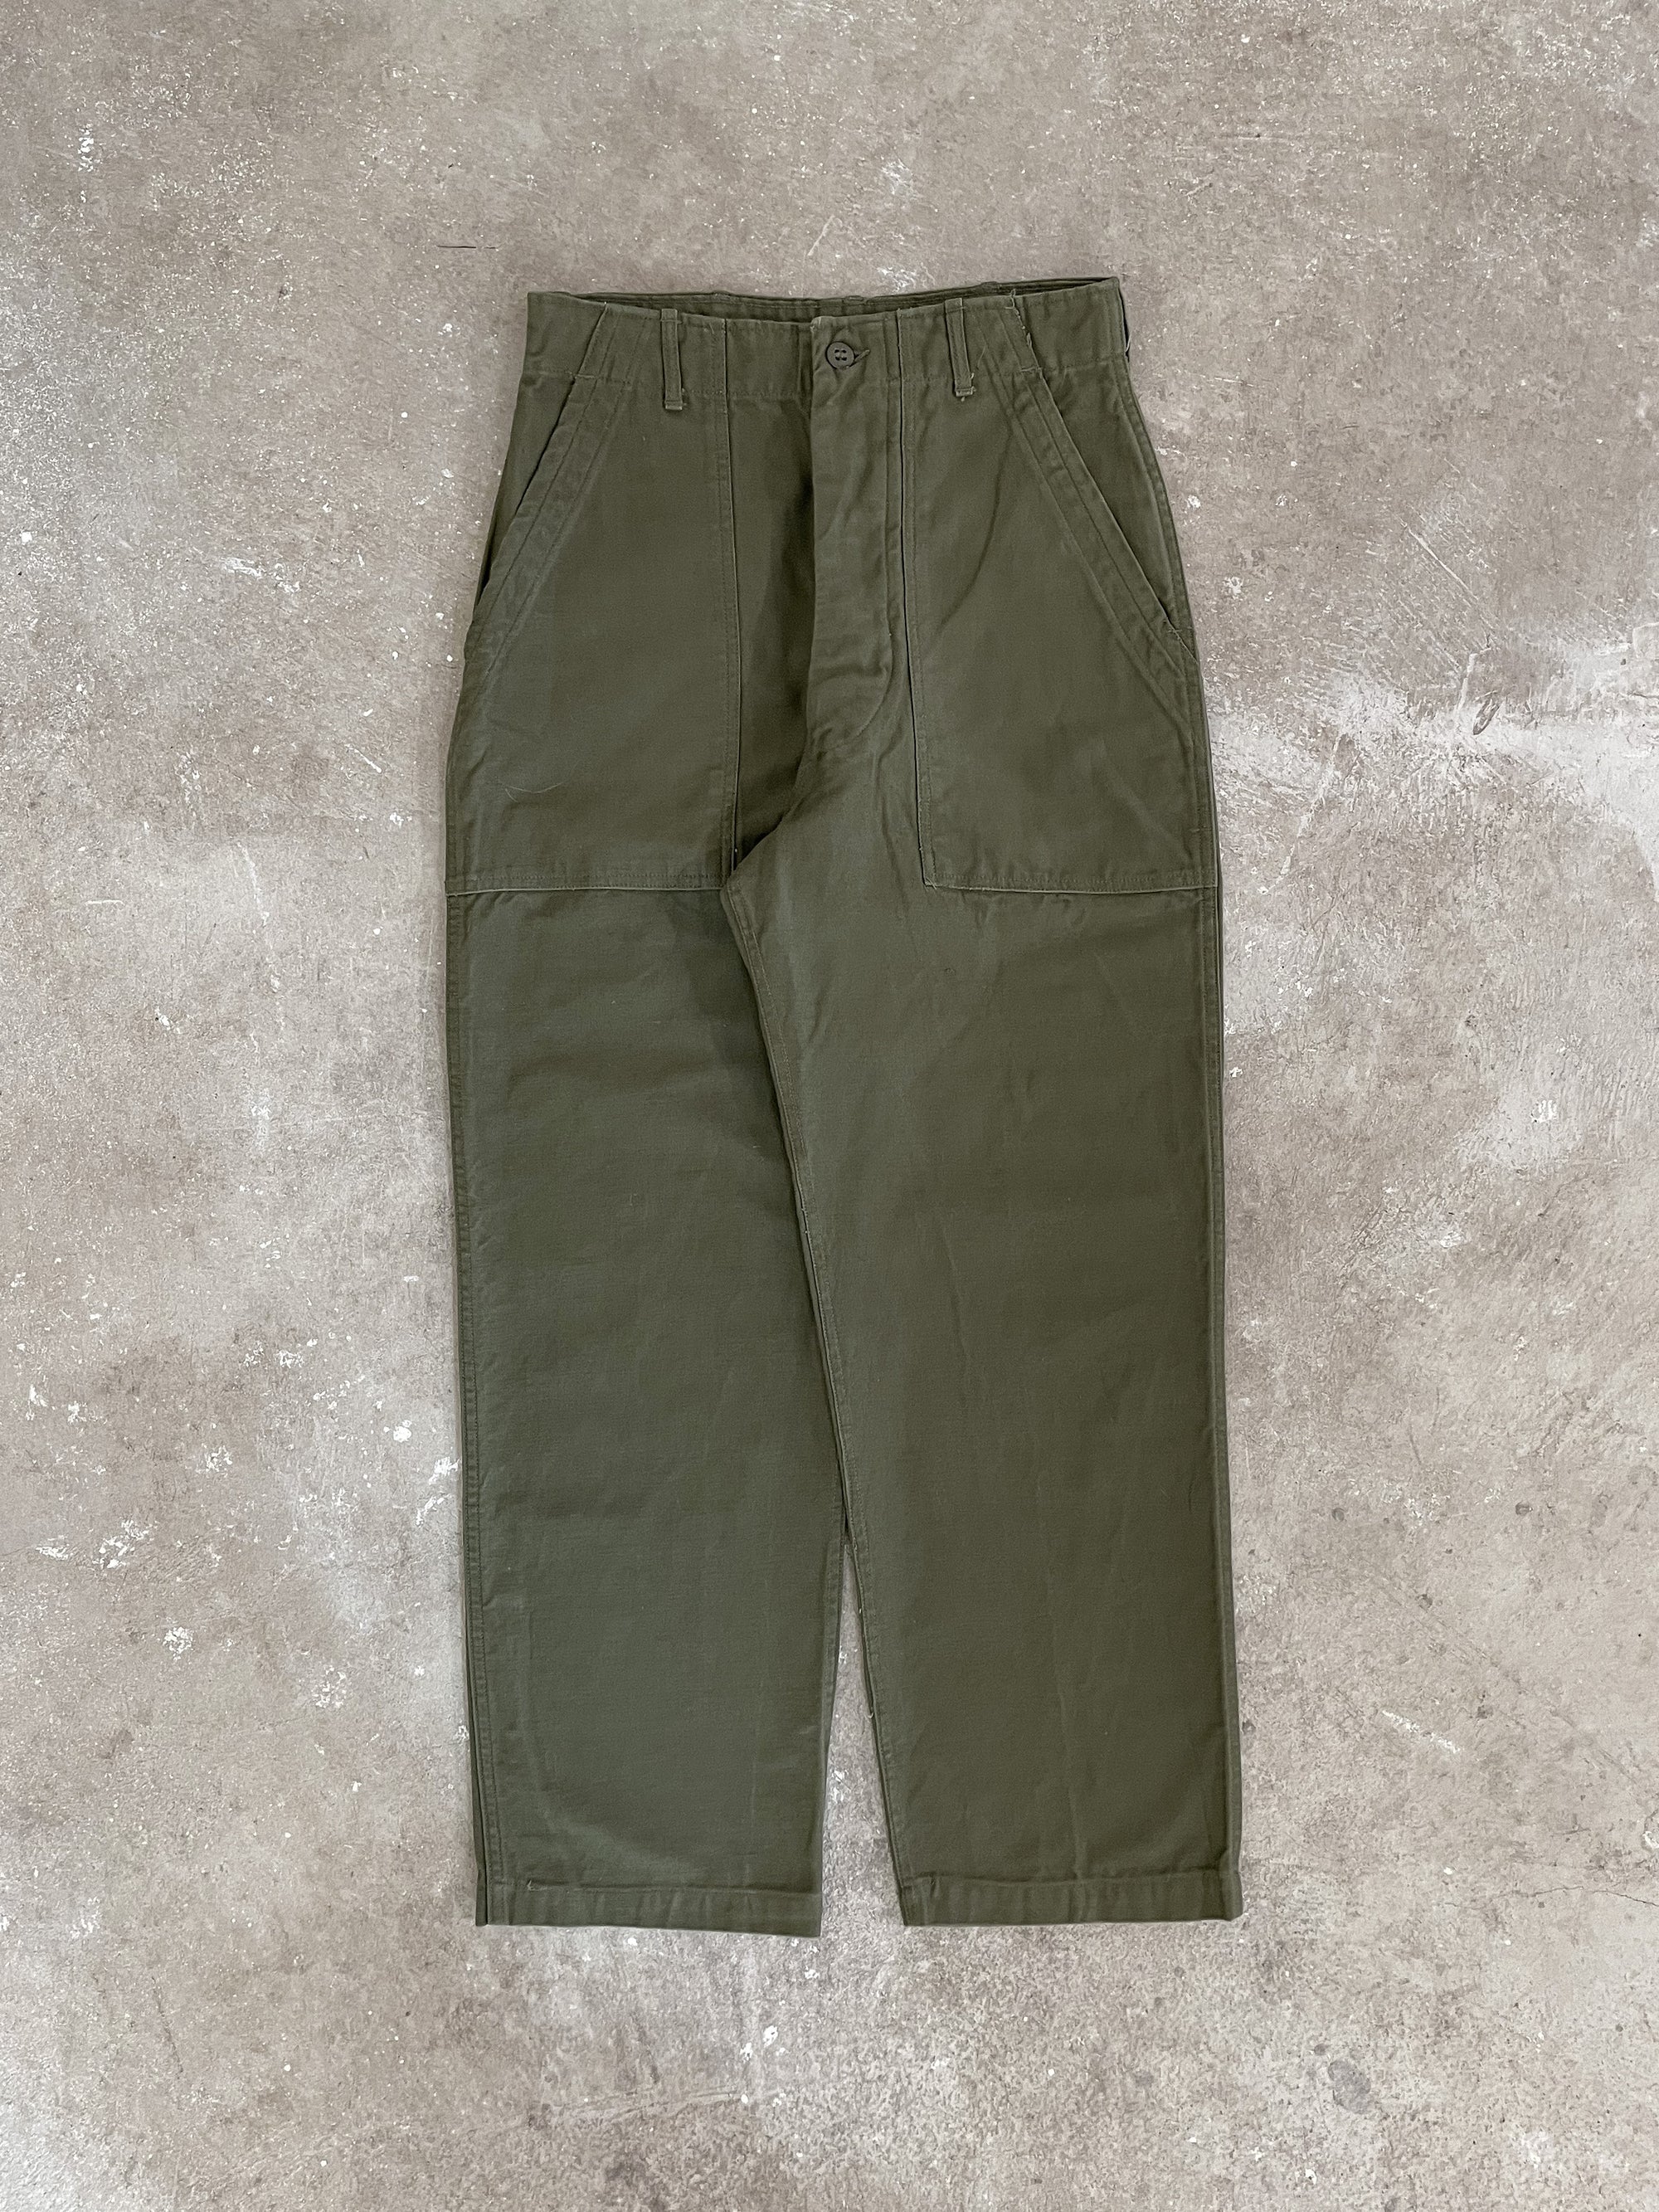 1960s OG-107 Military Fatigue Pants (27X27)